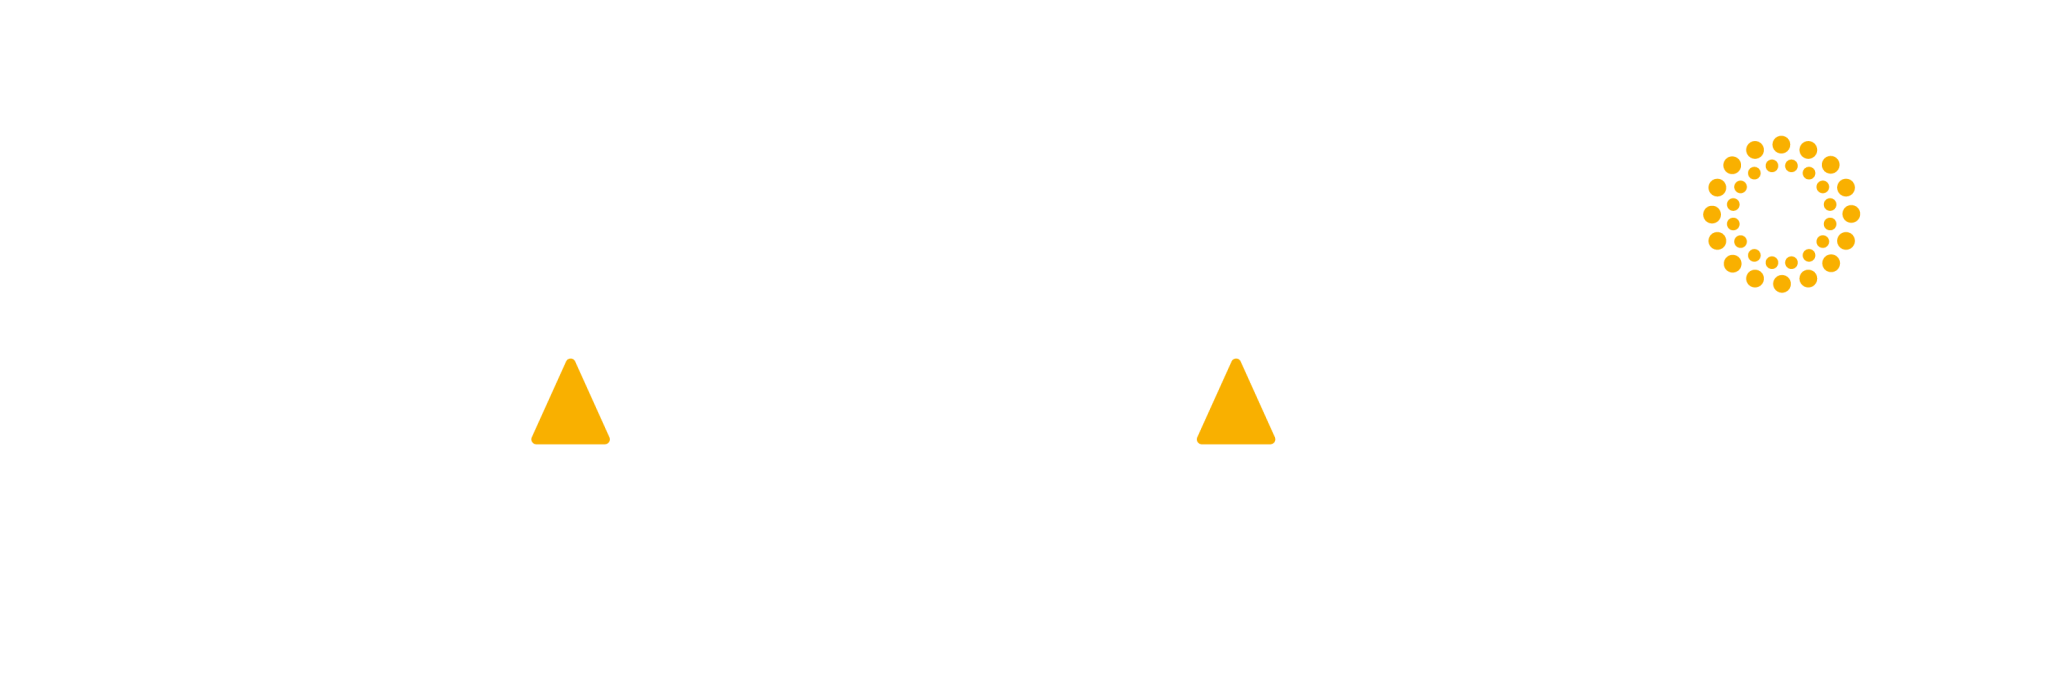 Saman logo - wit